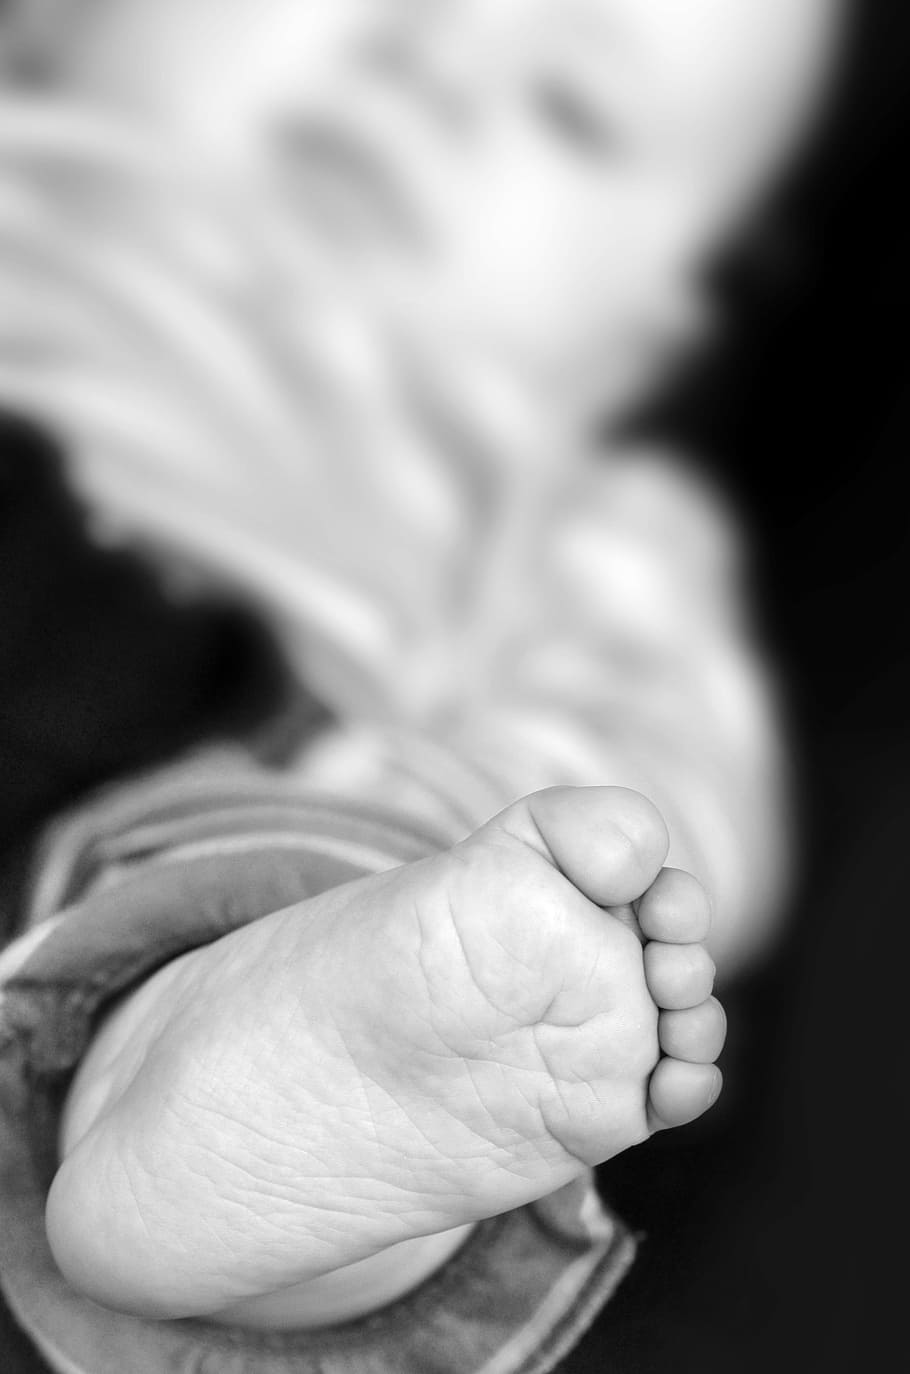 발, 아기, 열, 아기 발, 신생아, 작은, 환생, 인간의, 신체 일부, 어린이